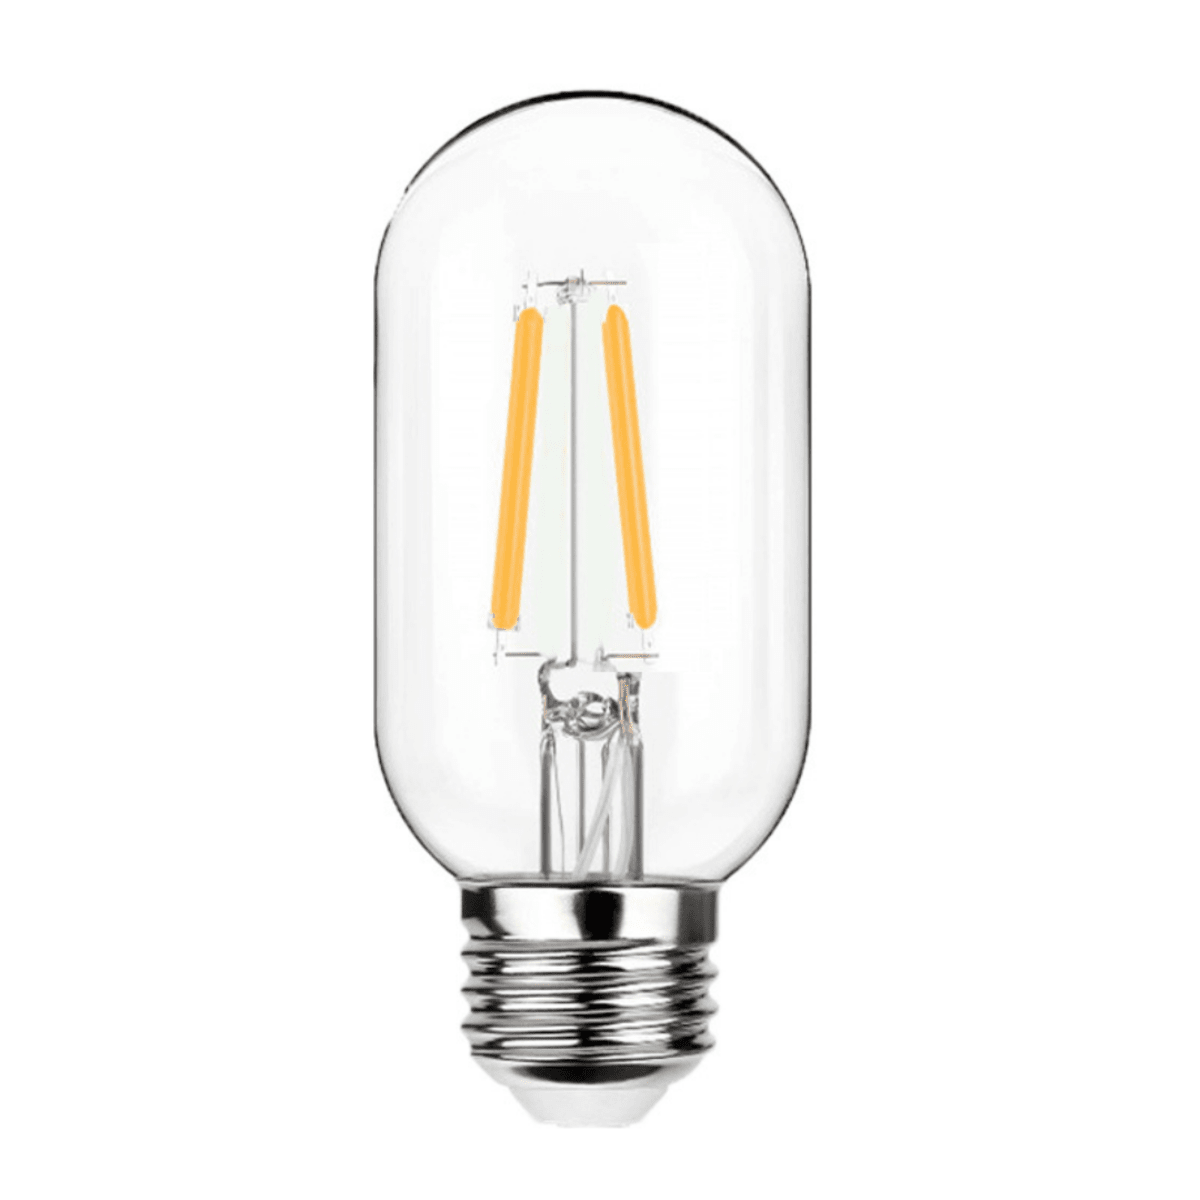 Litehouse Modern LED Bulb Pack for Festoon Bulb String Lights